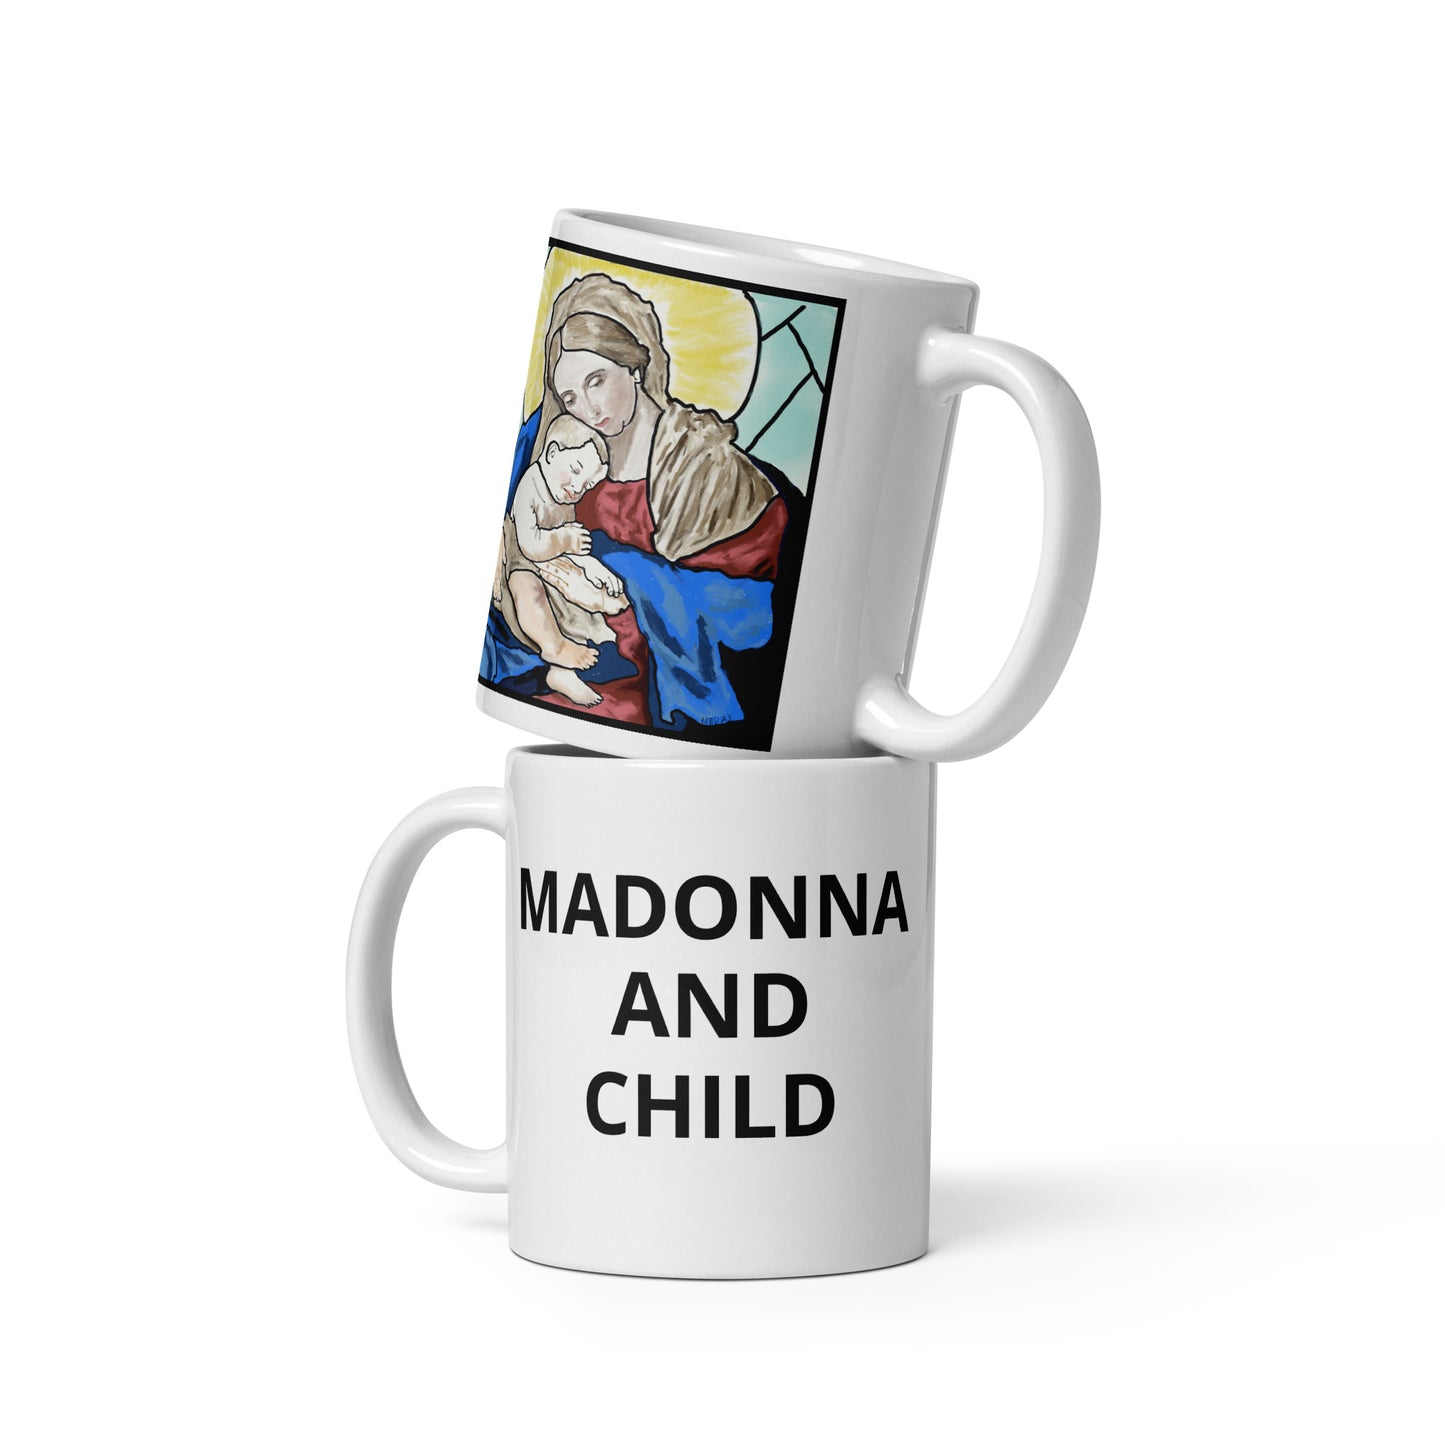 Madonna and Child Mug